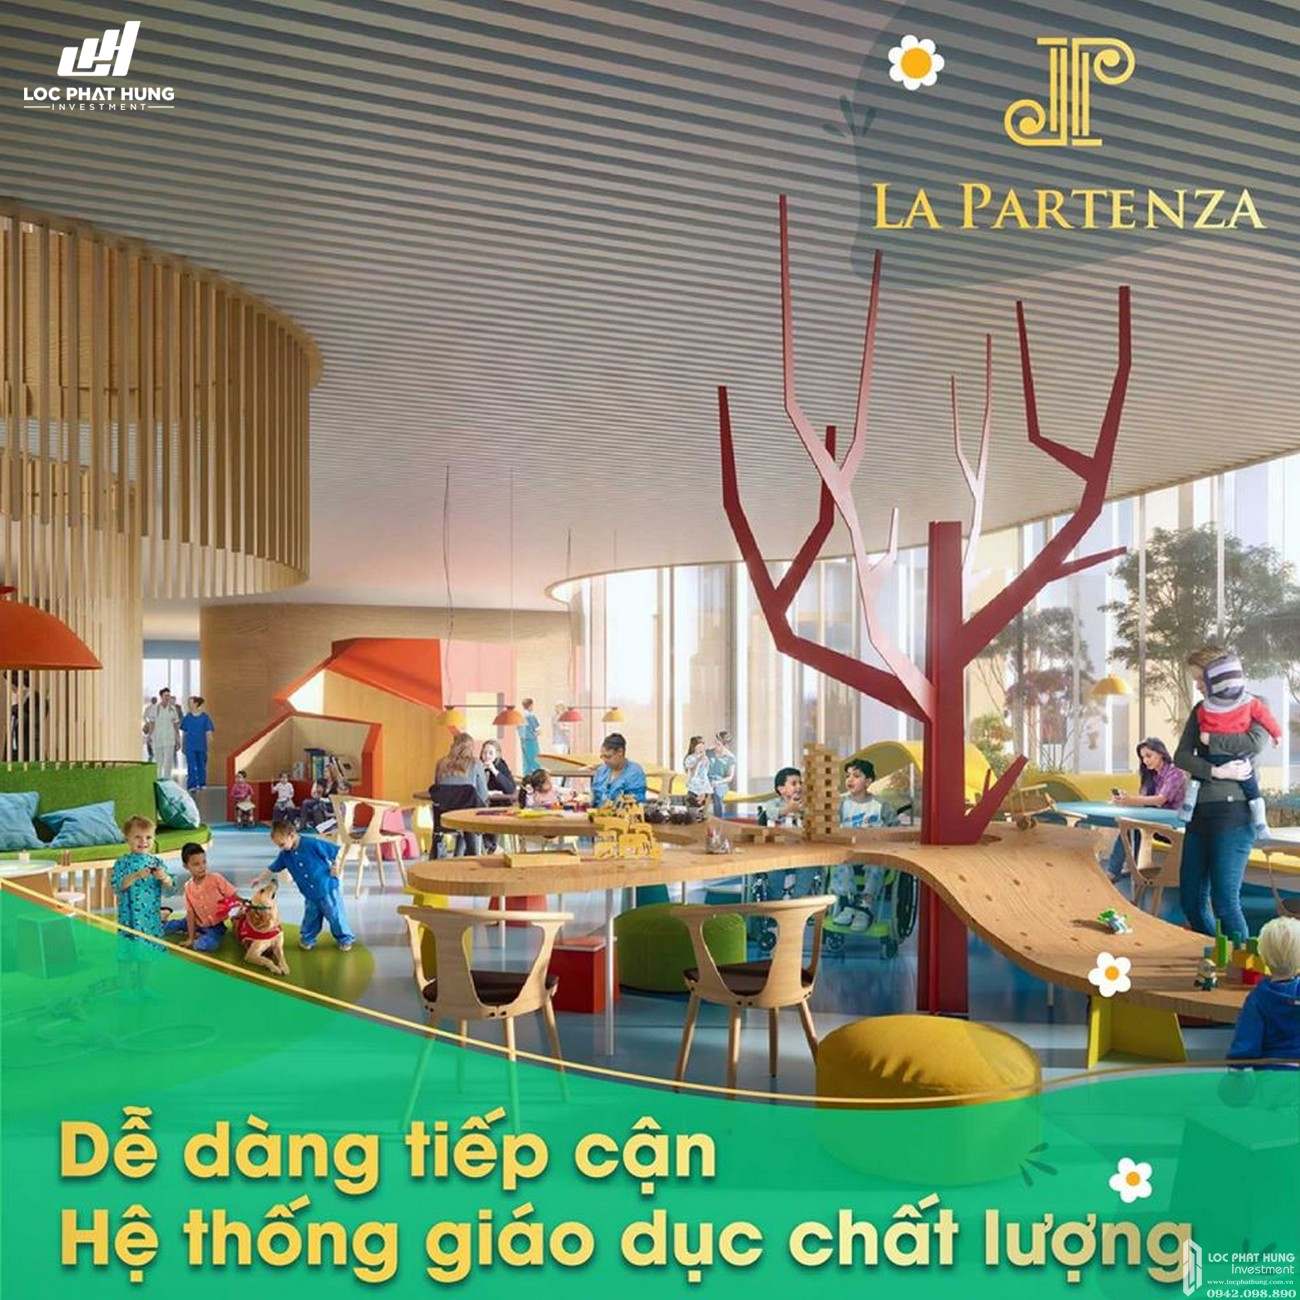 Đầu tư tương lai cho con trẻ tại La Partenza Nhà Bè